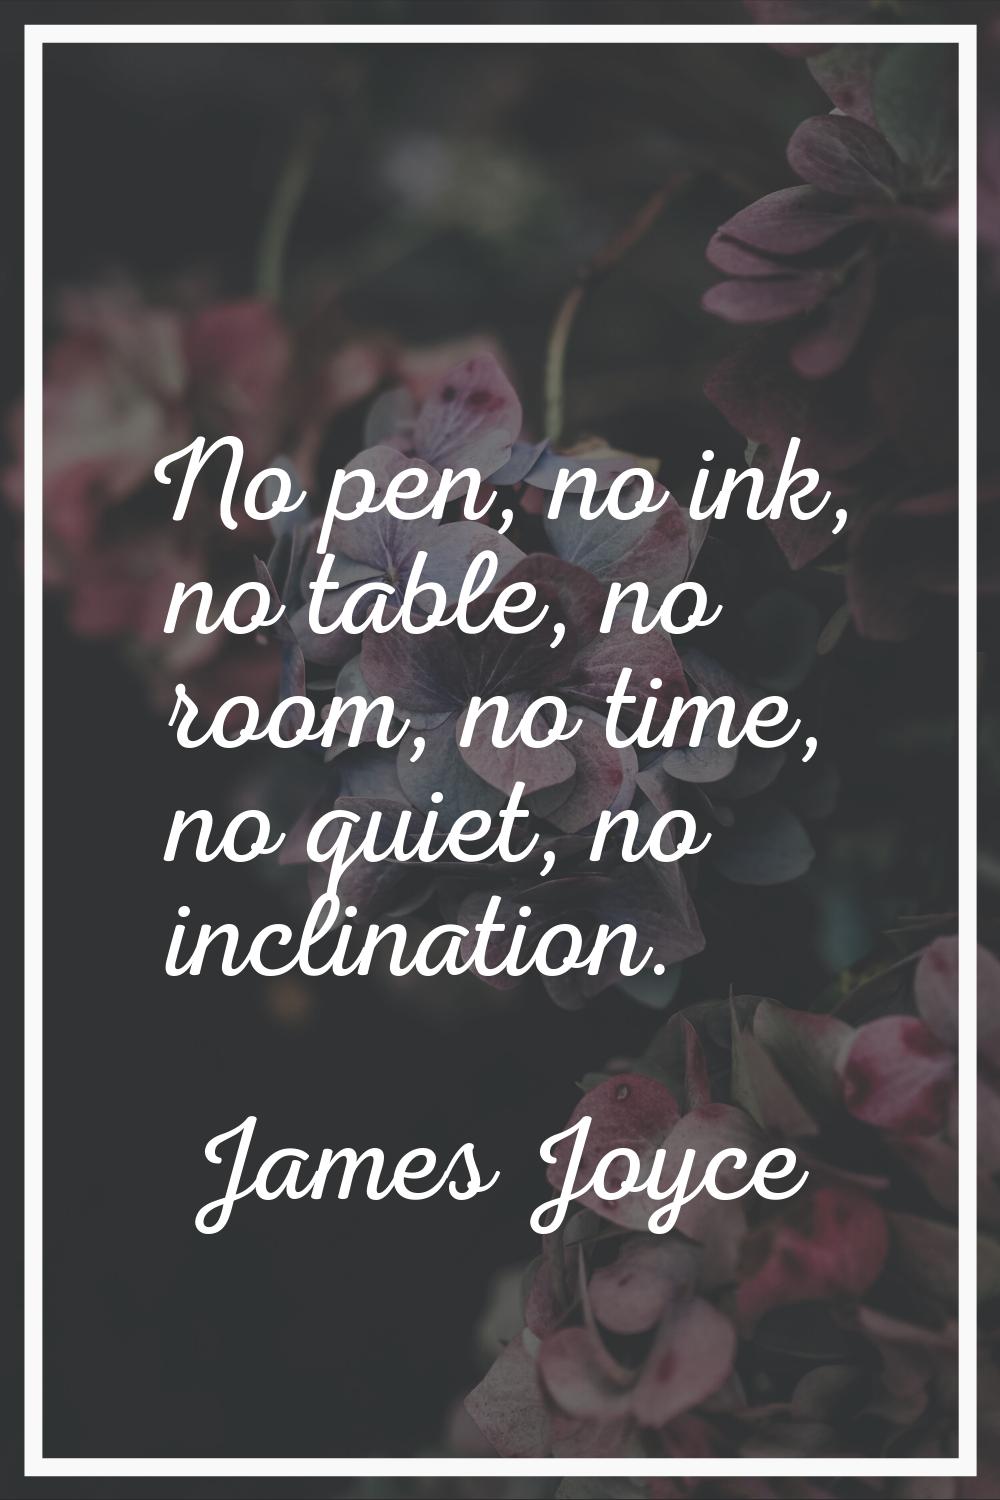 No pen, no ink, no table, no room, no time, no quiet, no inclination.